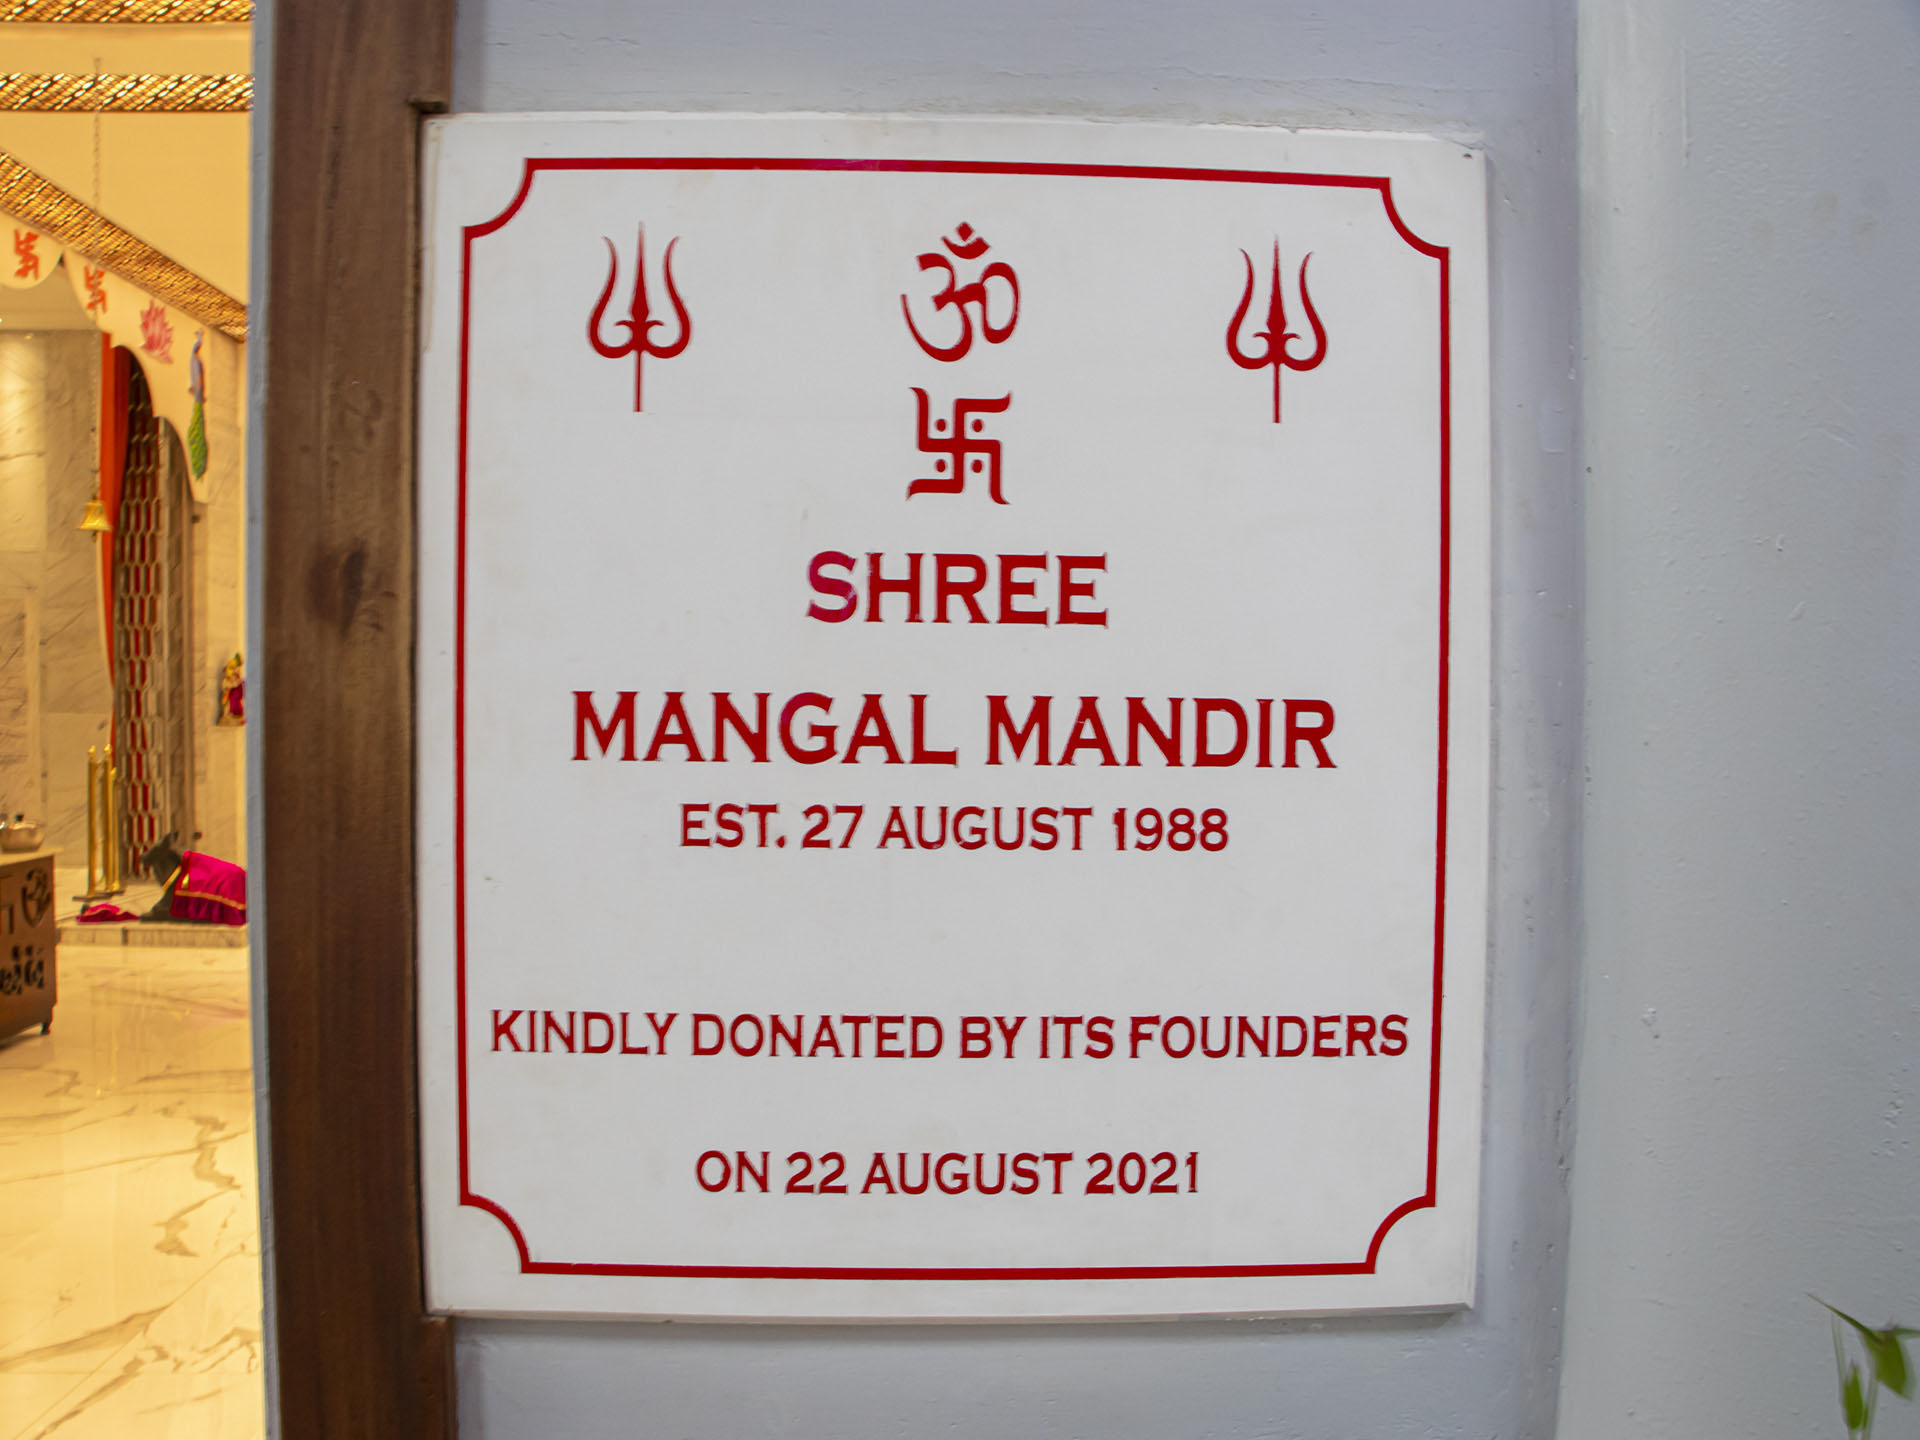 SHREE MANGAL MANDIR